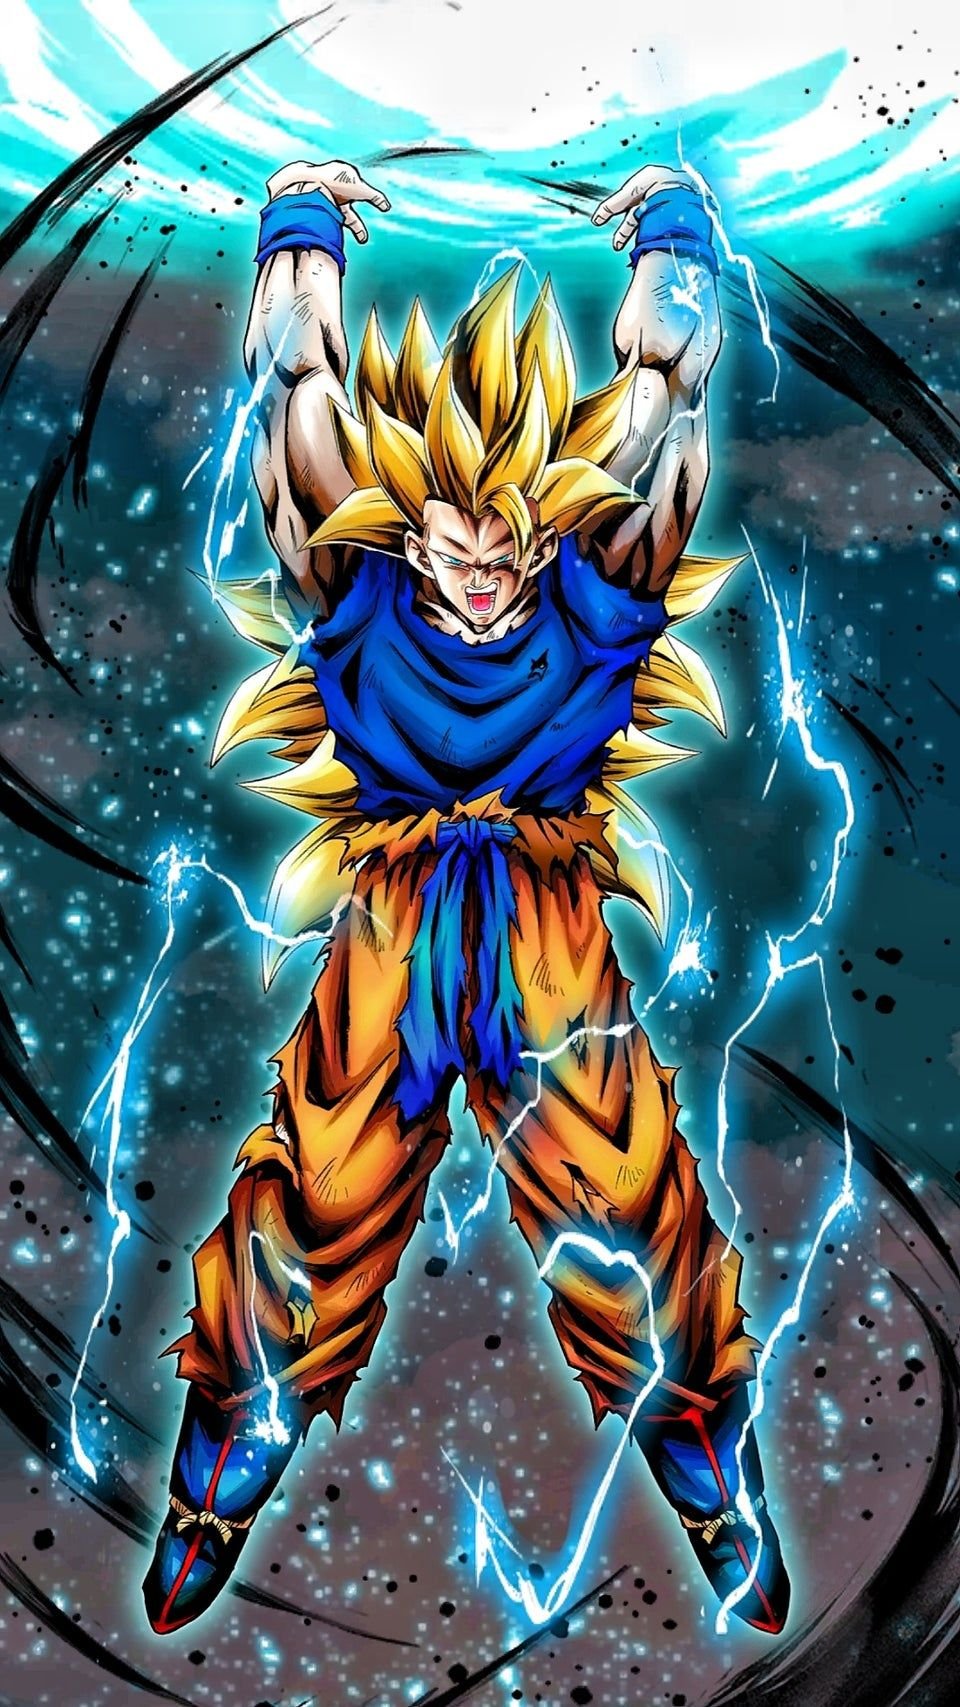 Goku Super Saiyan HD Wallpaper For Mobile